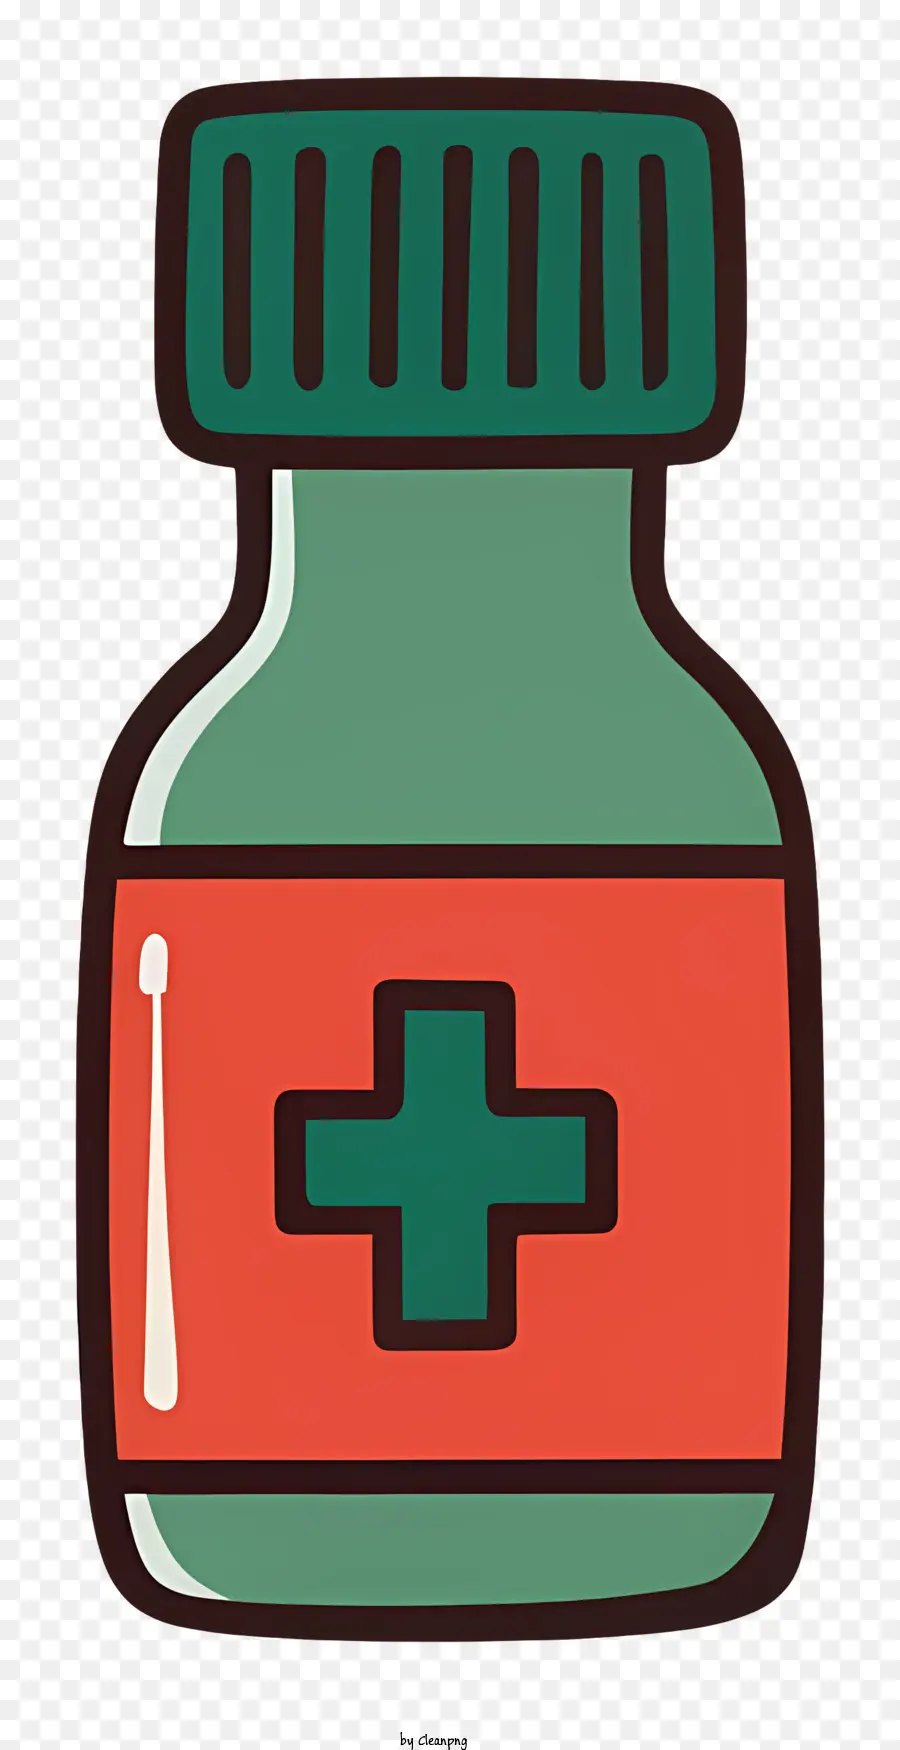 Medicina in vetro Medicina etichetta trasversale verde liquida rossa - Semplice illustrazione di una bottiglia di medicina con liquido